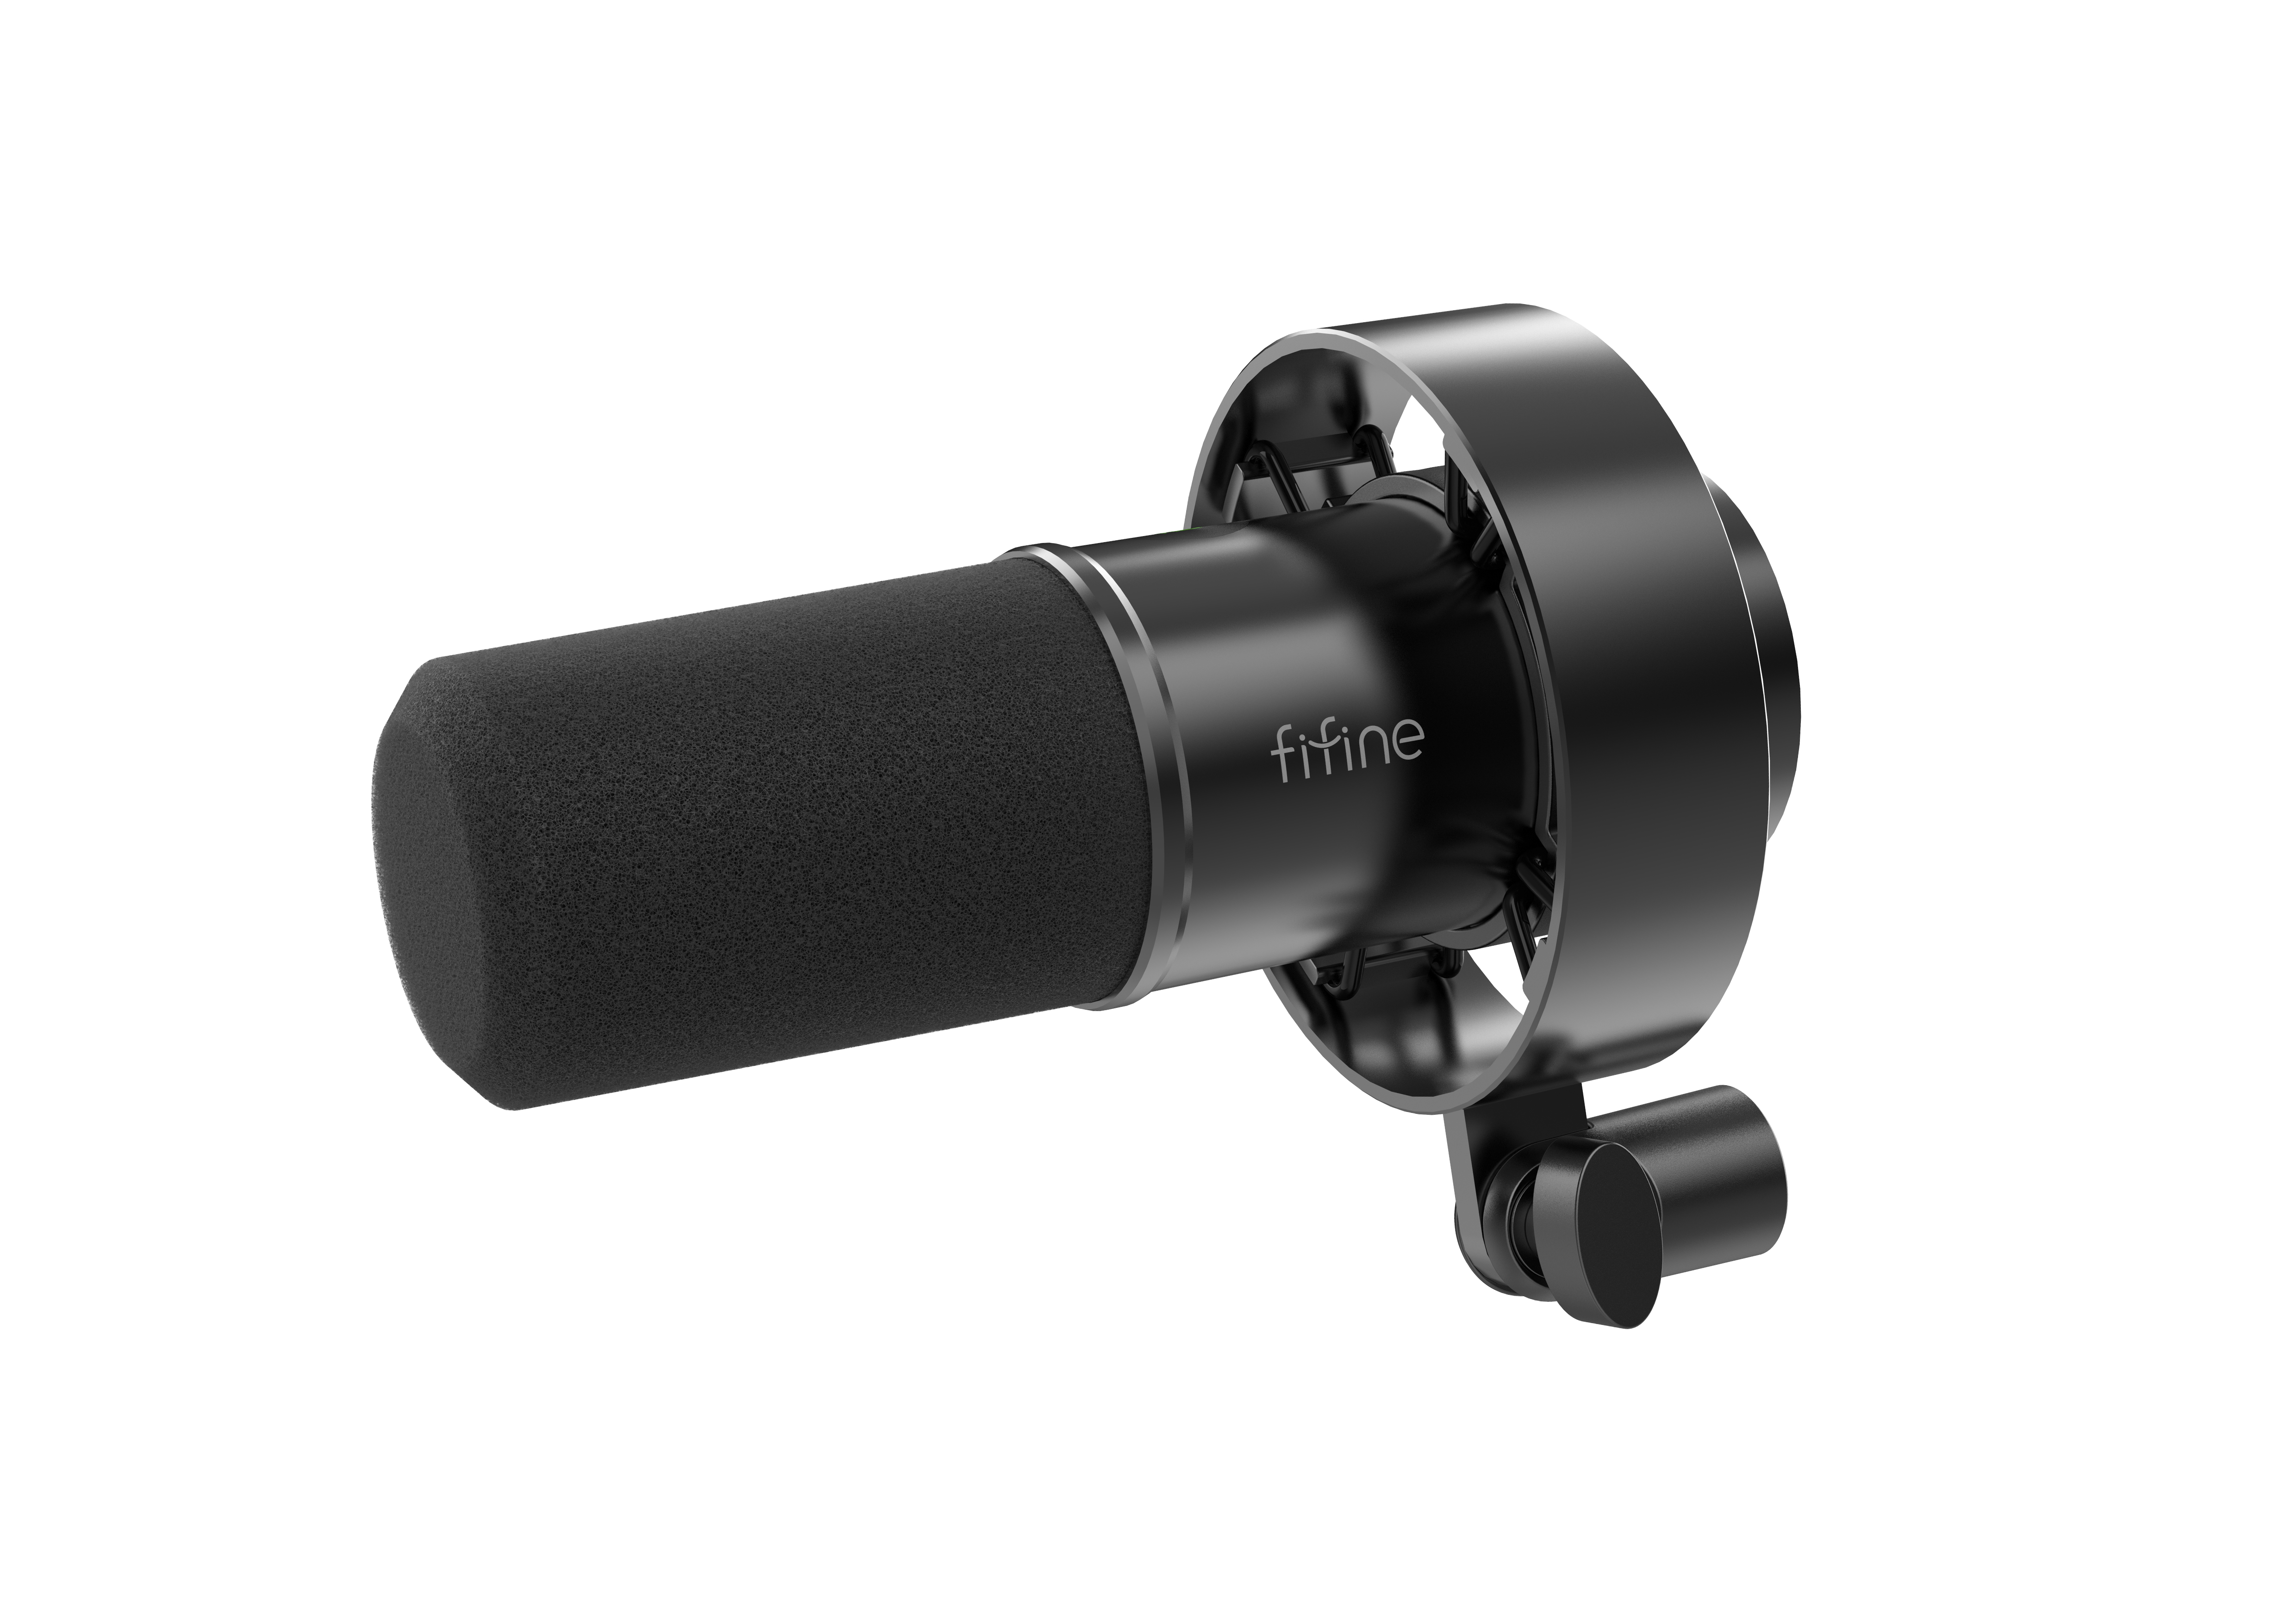 Micrófono Fifine K688 BLACK Dinámico